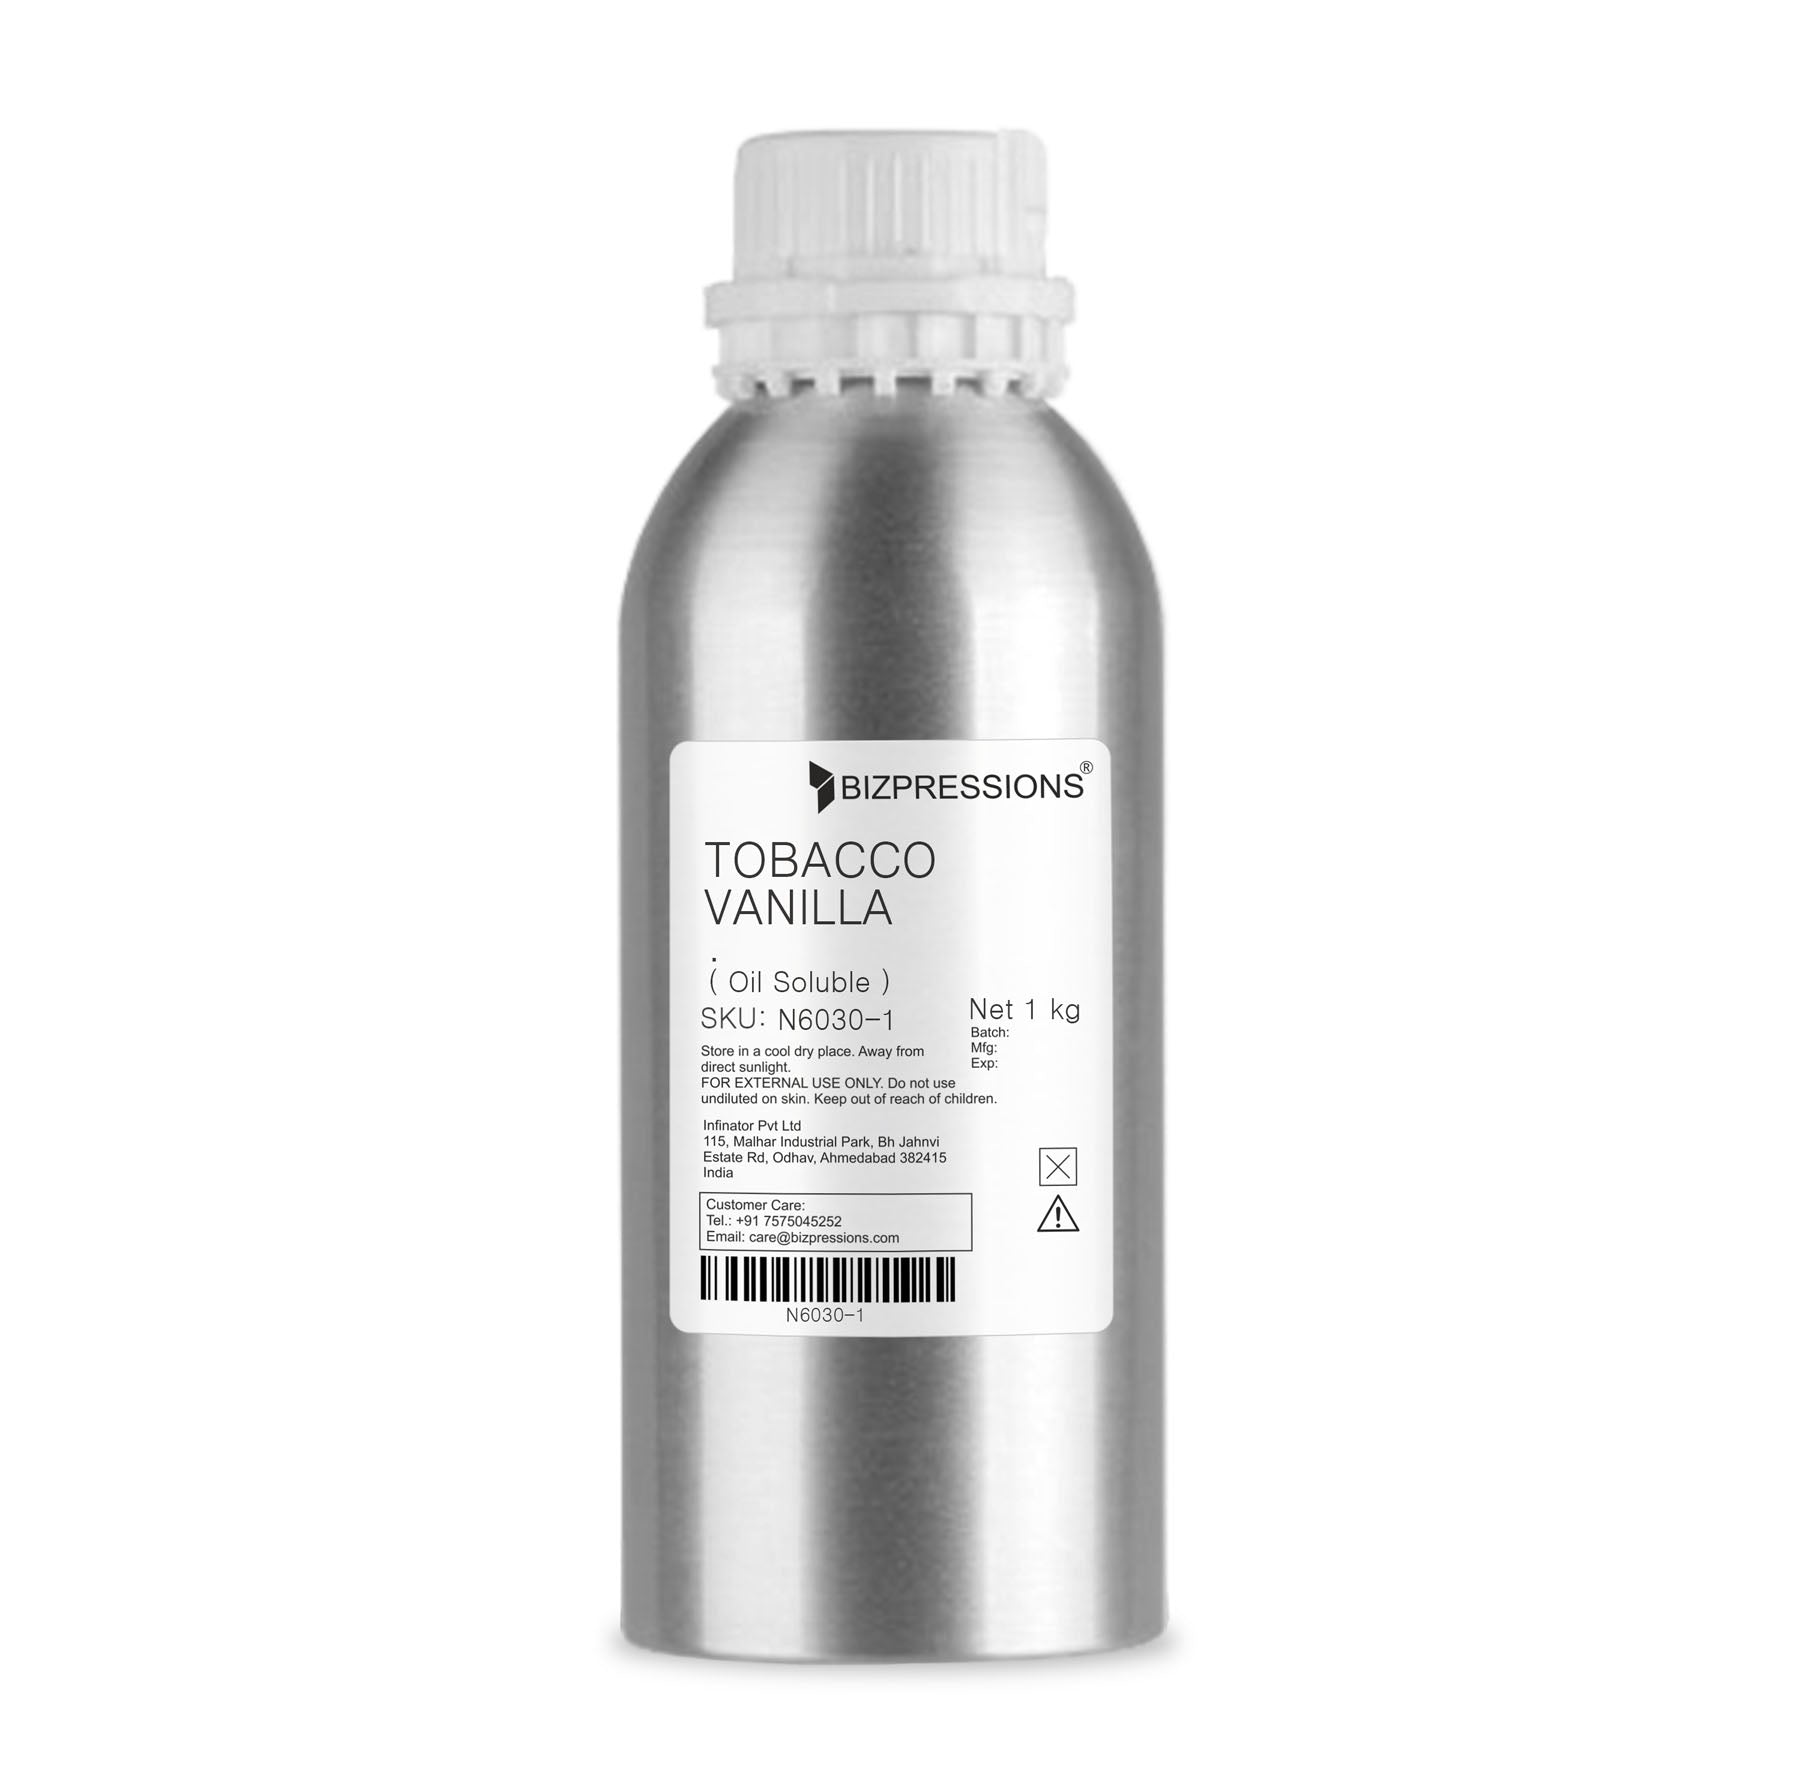 TOBACCO VANILLA - Fragrance ( Oil Soluble ) - 1 kg